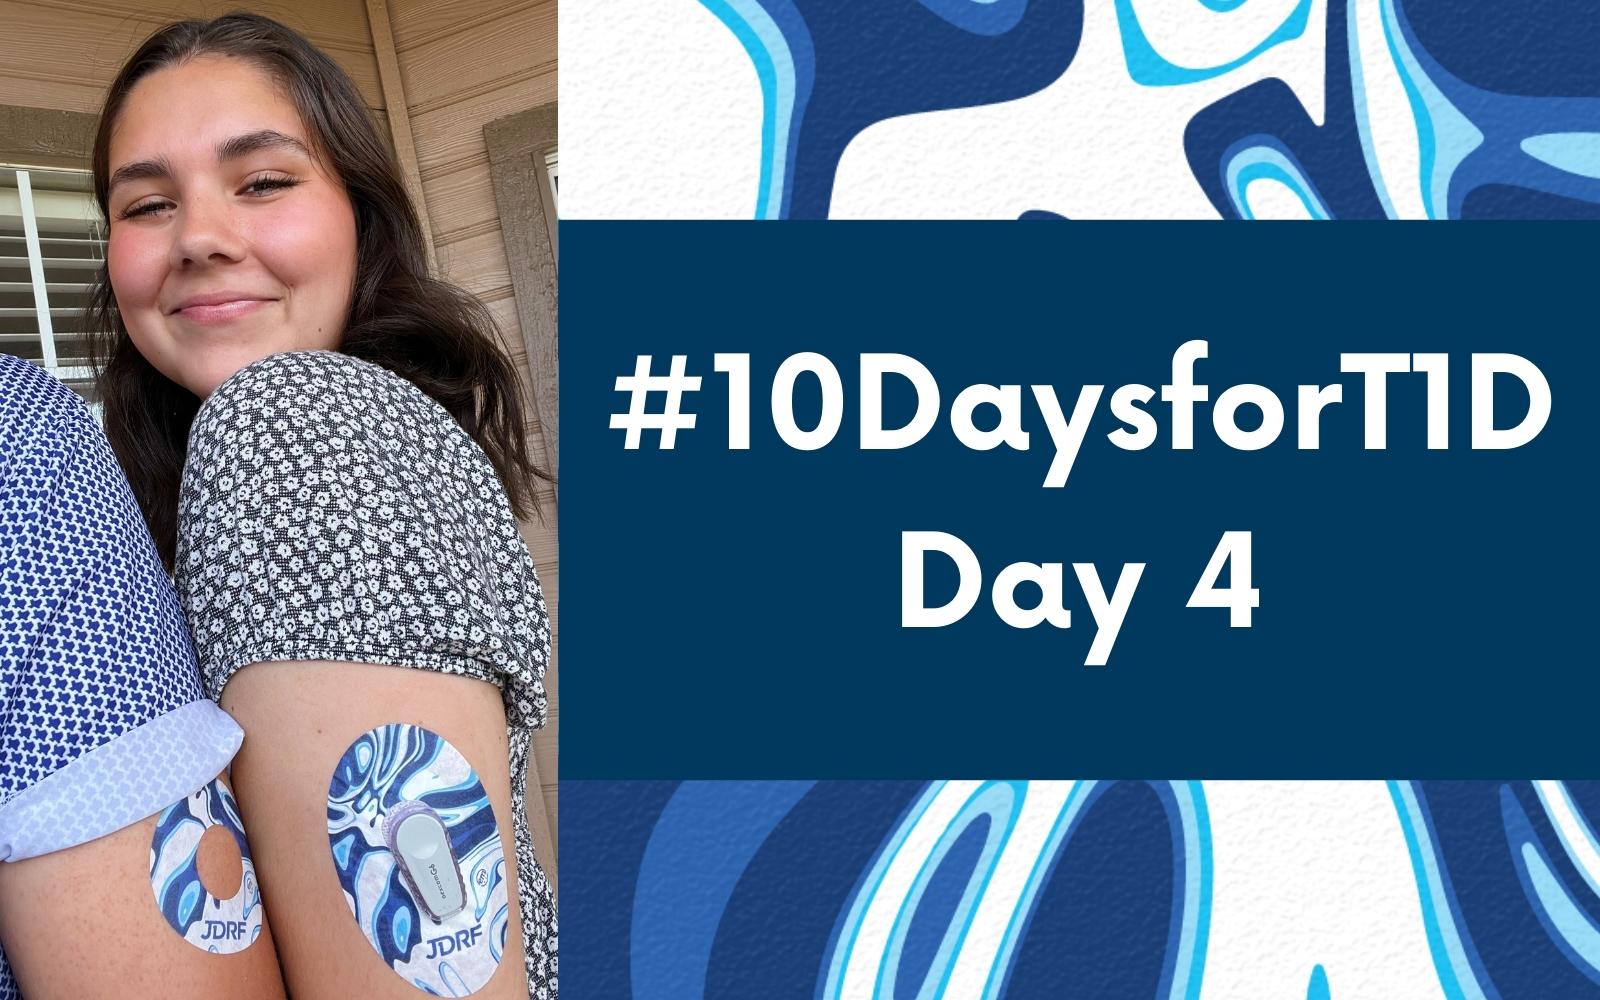 #10DaysforT1D Challenge Day 4